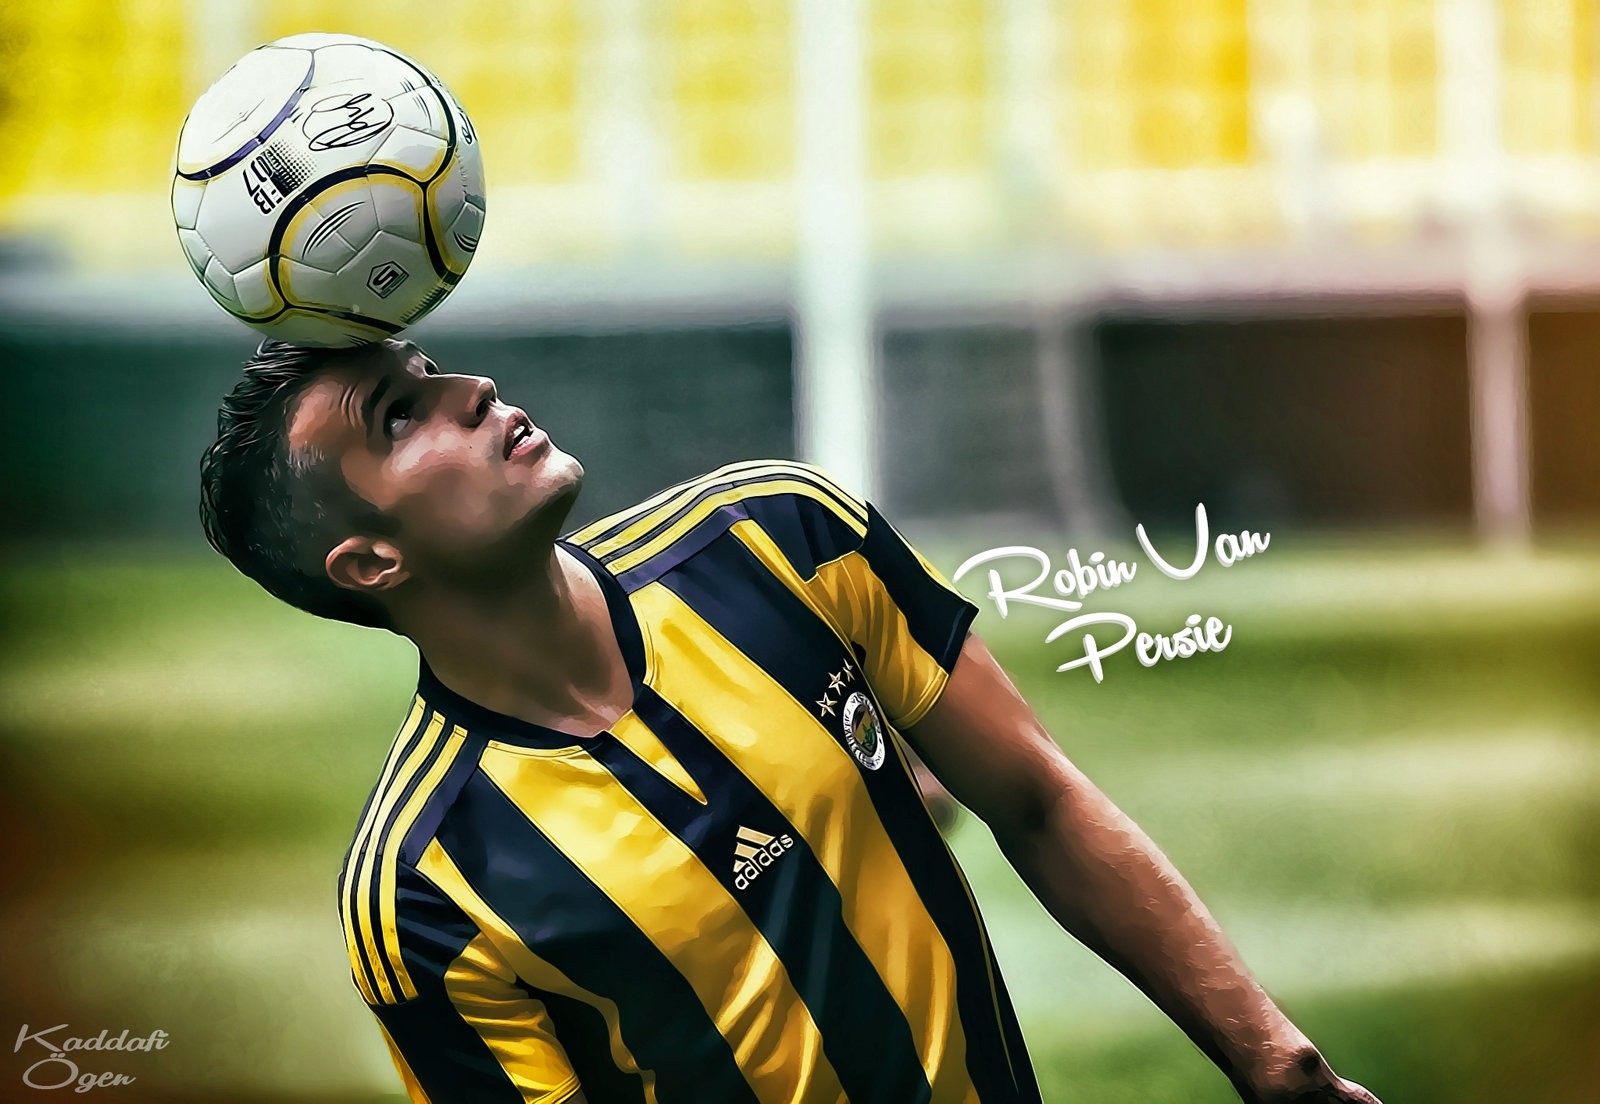 General 1600x1104 Robin van Persie Fenerbahçe footballers soccer sport men soccer ball